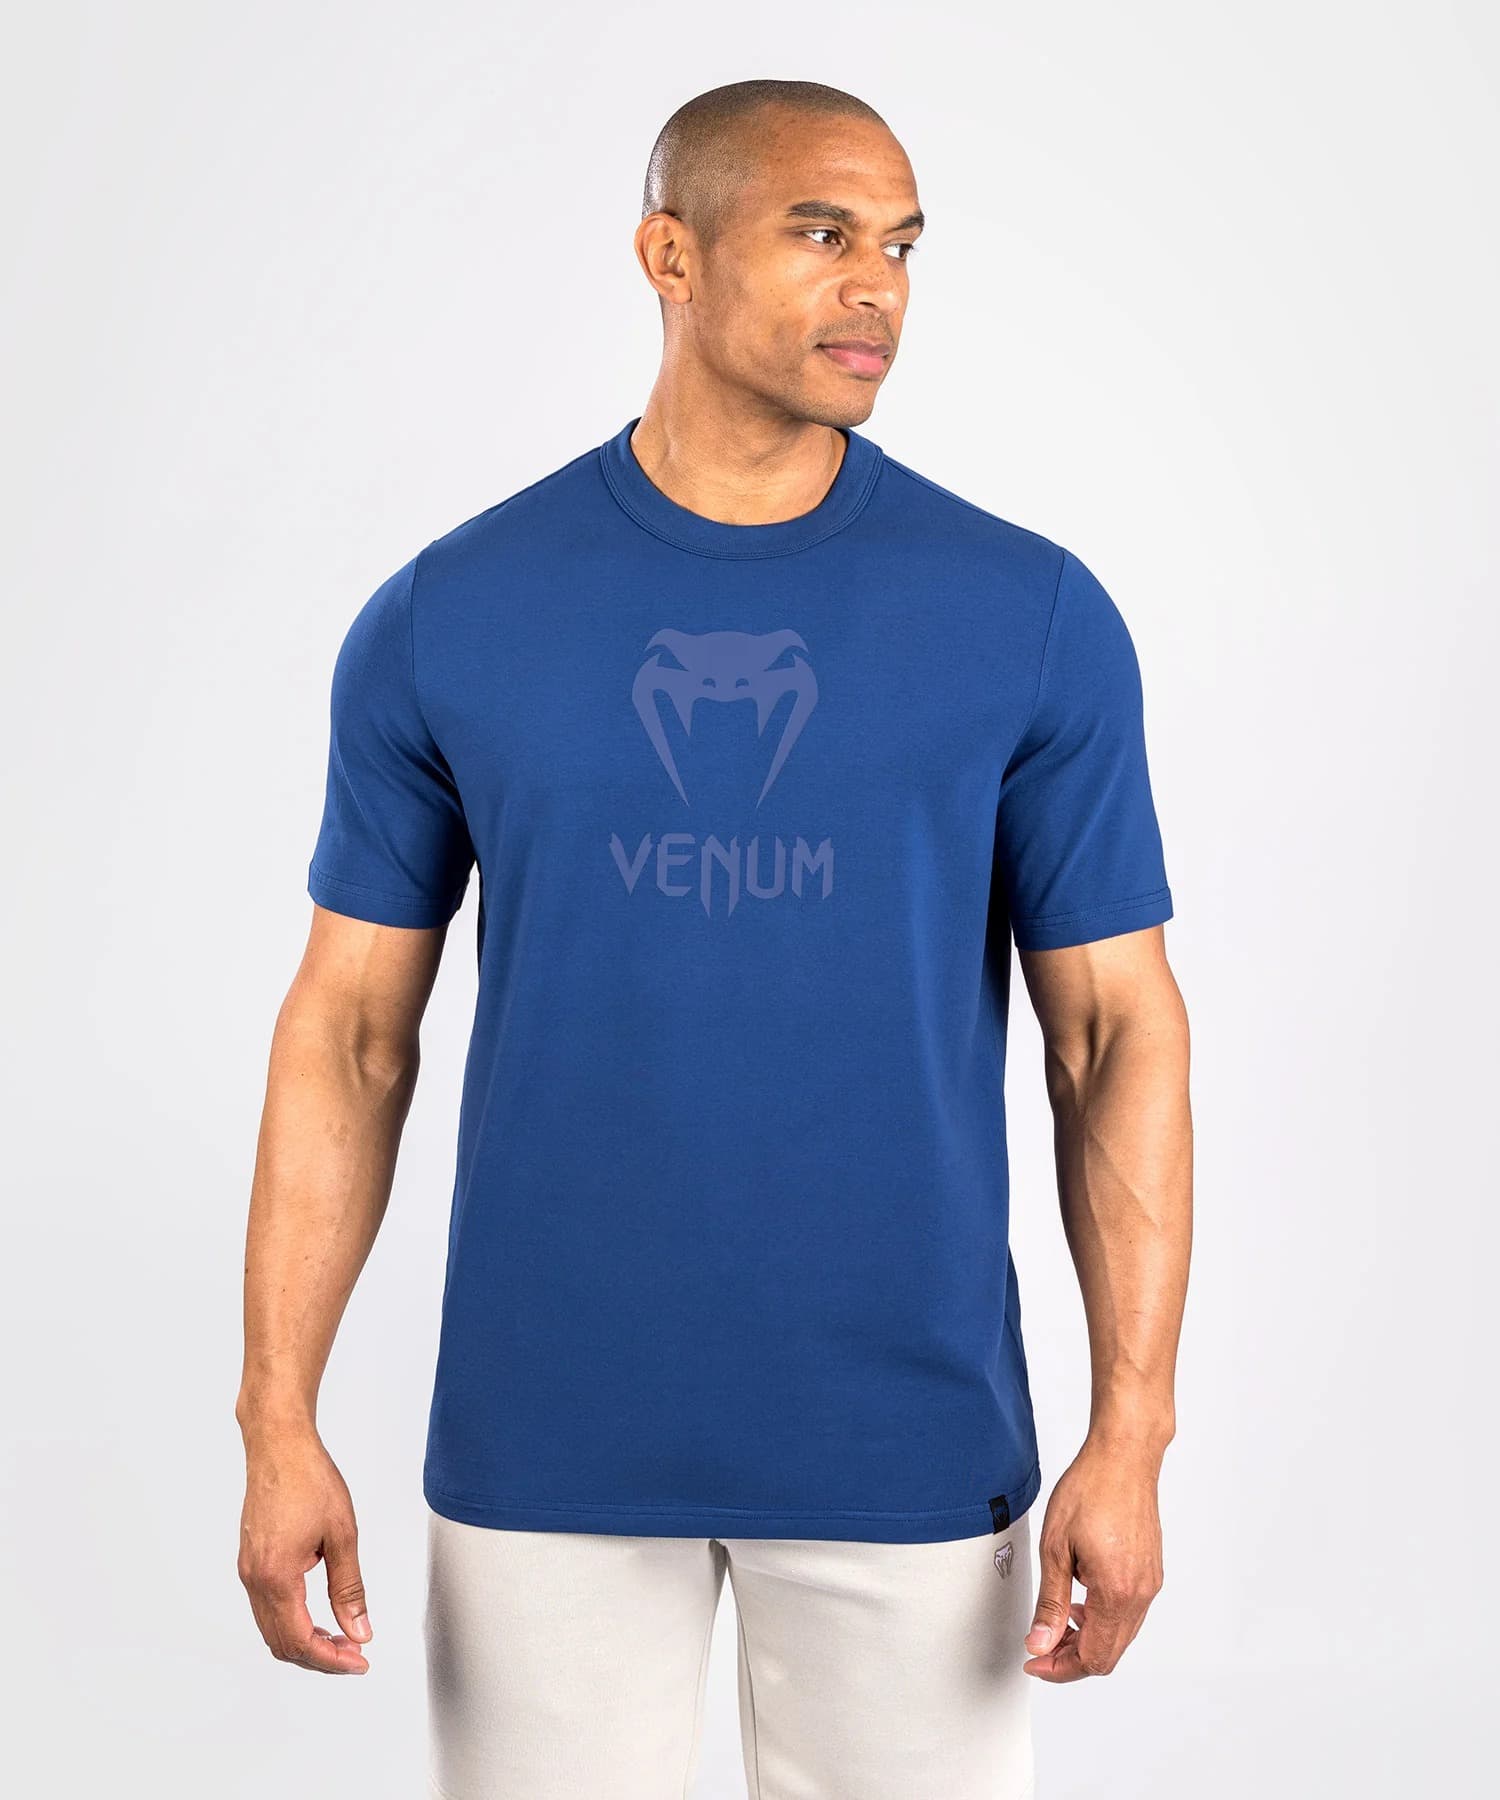 Venum Classic t-shirt azul marinho > Frete Gratis